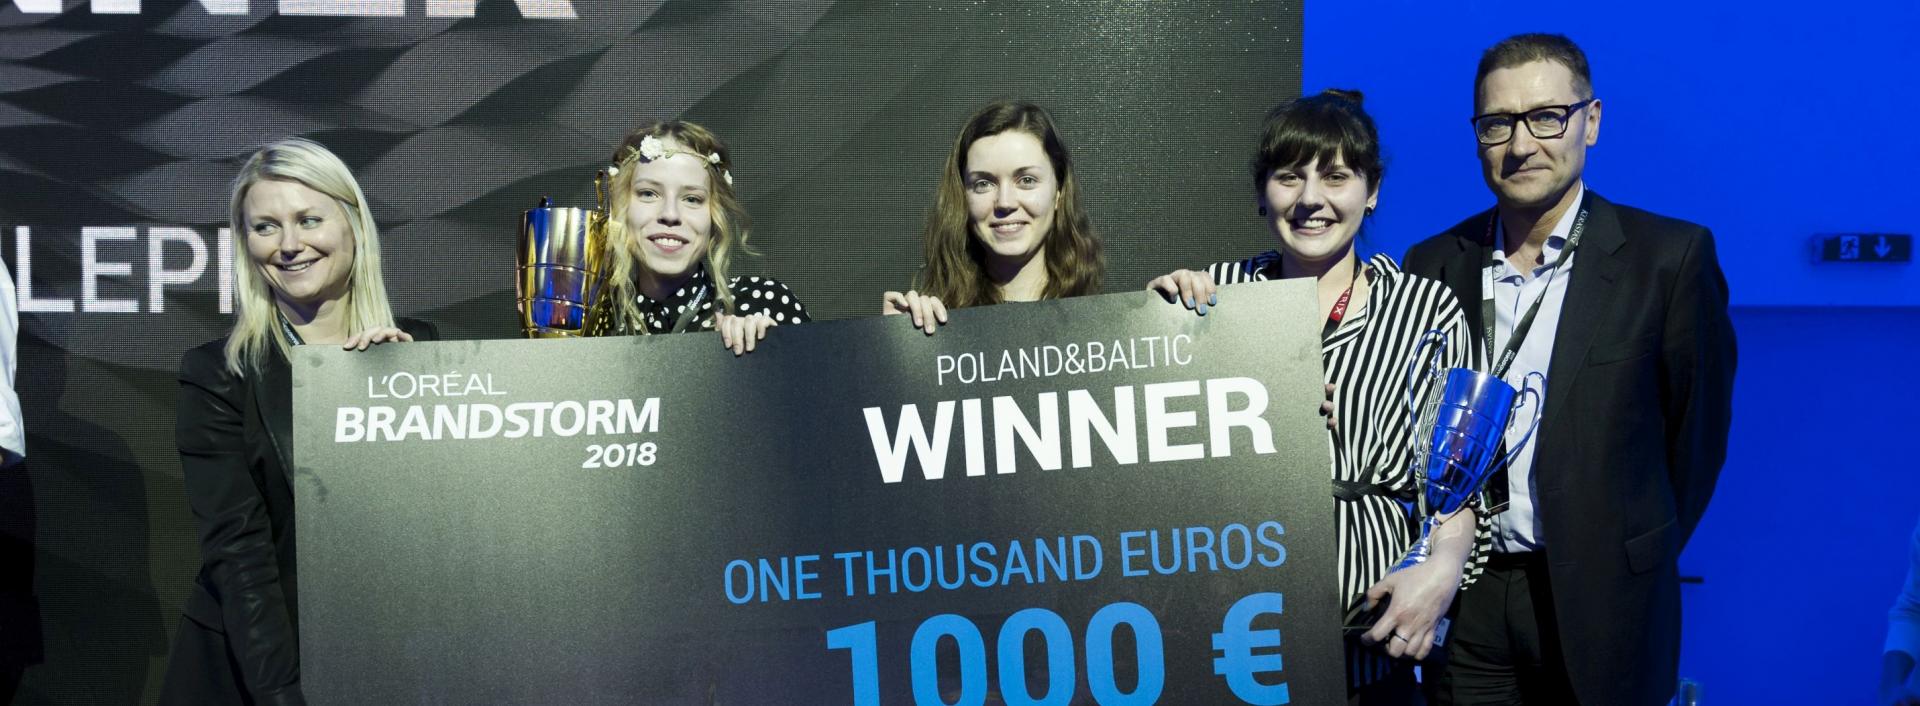 Polskie studentki z nagrodą główną regionalnego szczebla LOreal Brandstorm 